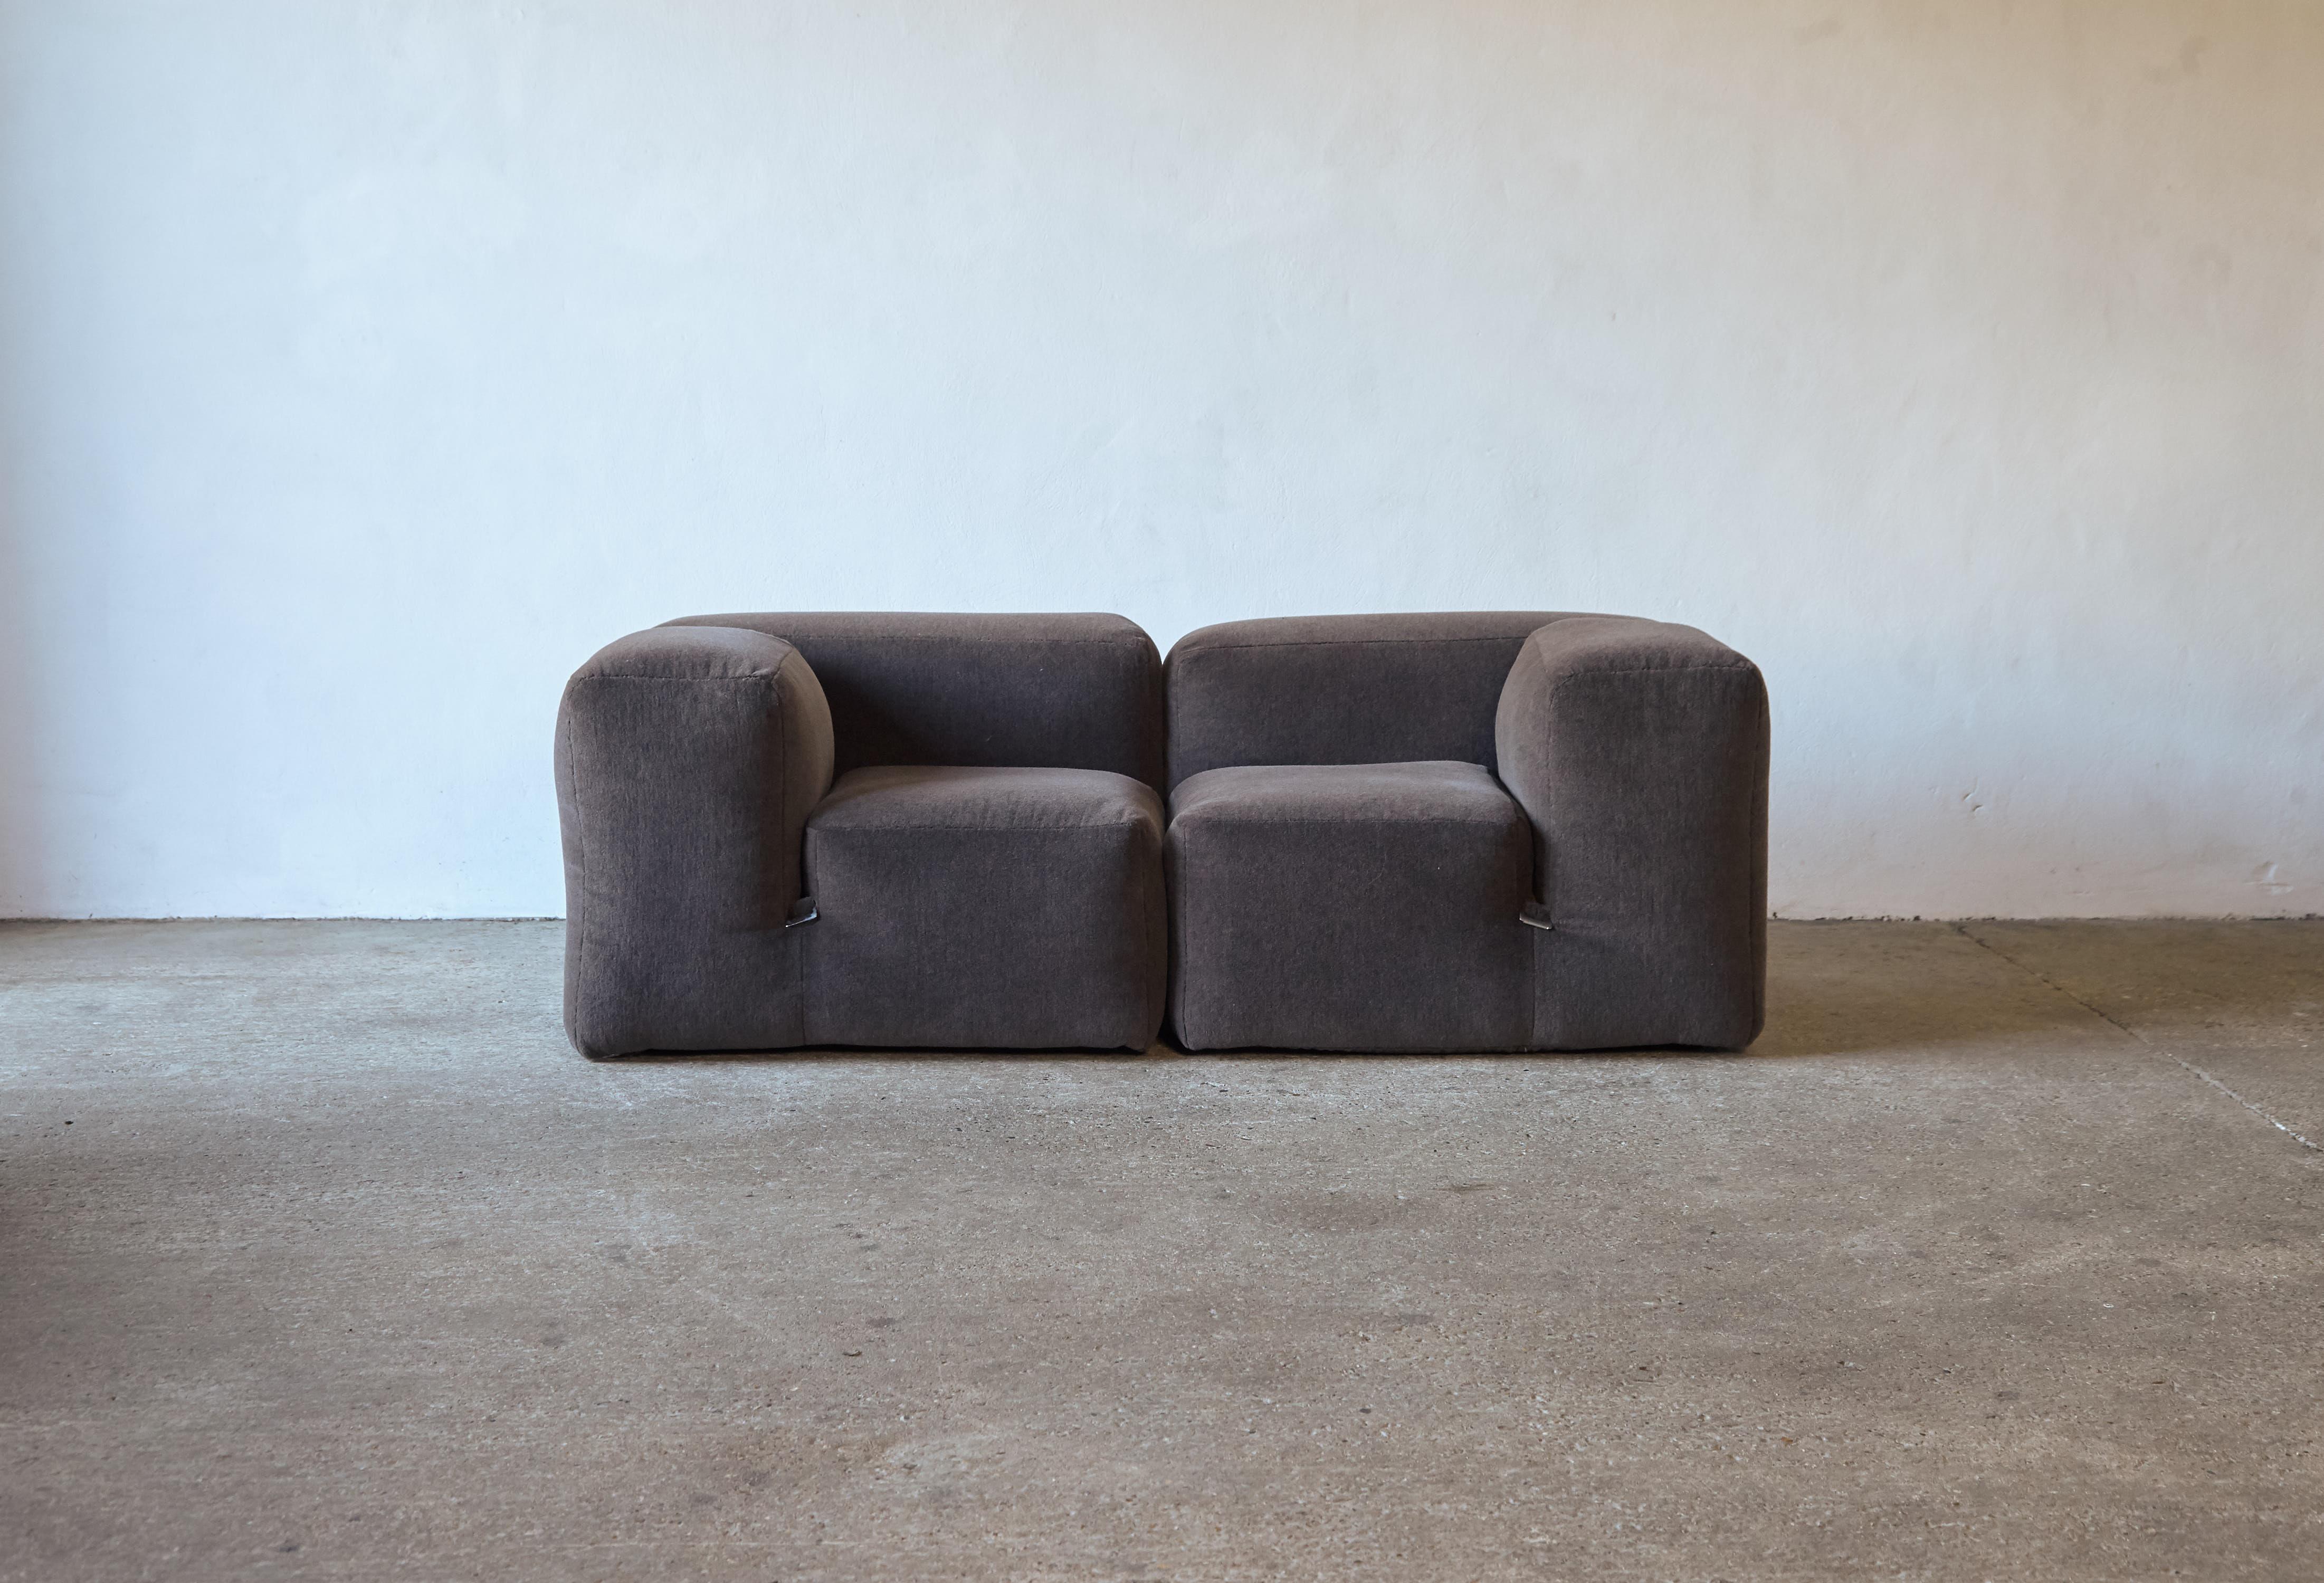 Original et très rare canapé modulable Mario Bellini Le Mura (peut également être utilisé comme deux chaises), fabriqué par Cassina, Italie, années 1970. Deux grands éléments d'assise qui forment ensemble un canapé à deux places. Nouvellement revêtu